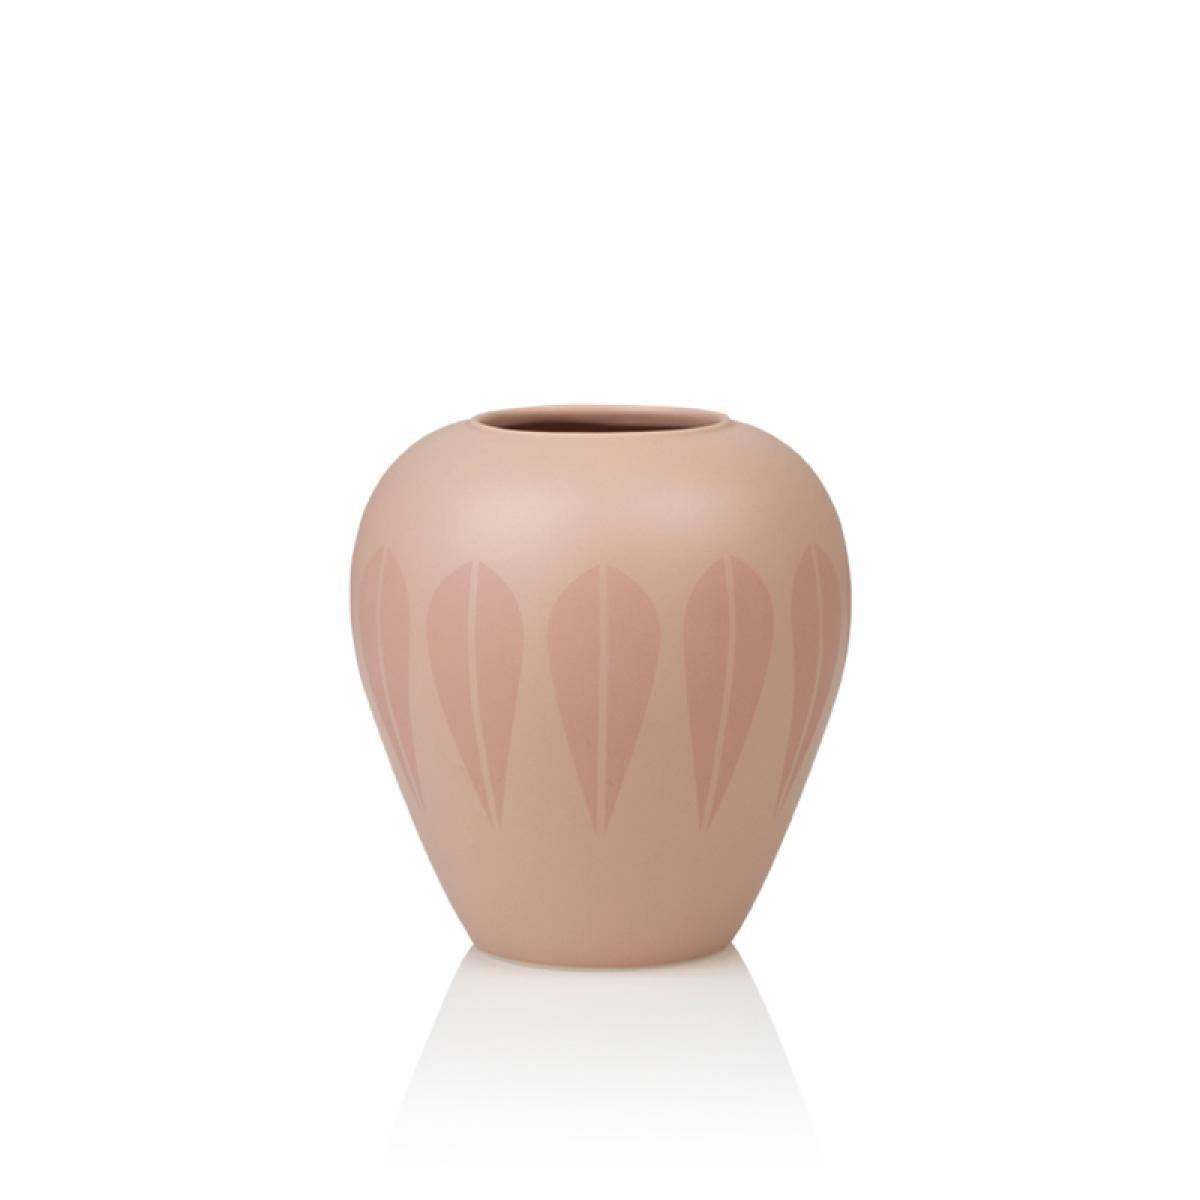 Lucie Kaas Arne Clausen Keramik Vase Nude, 17cm